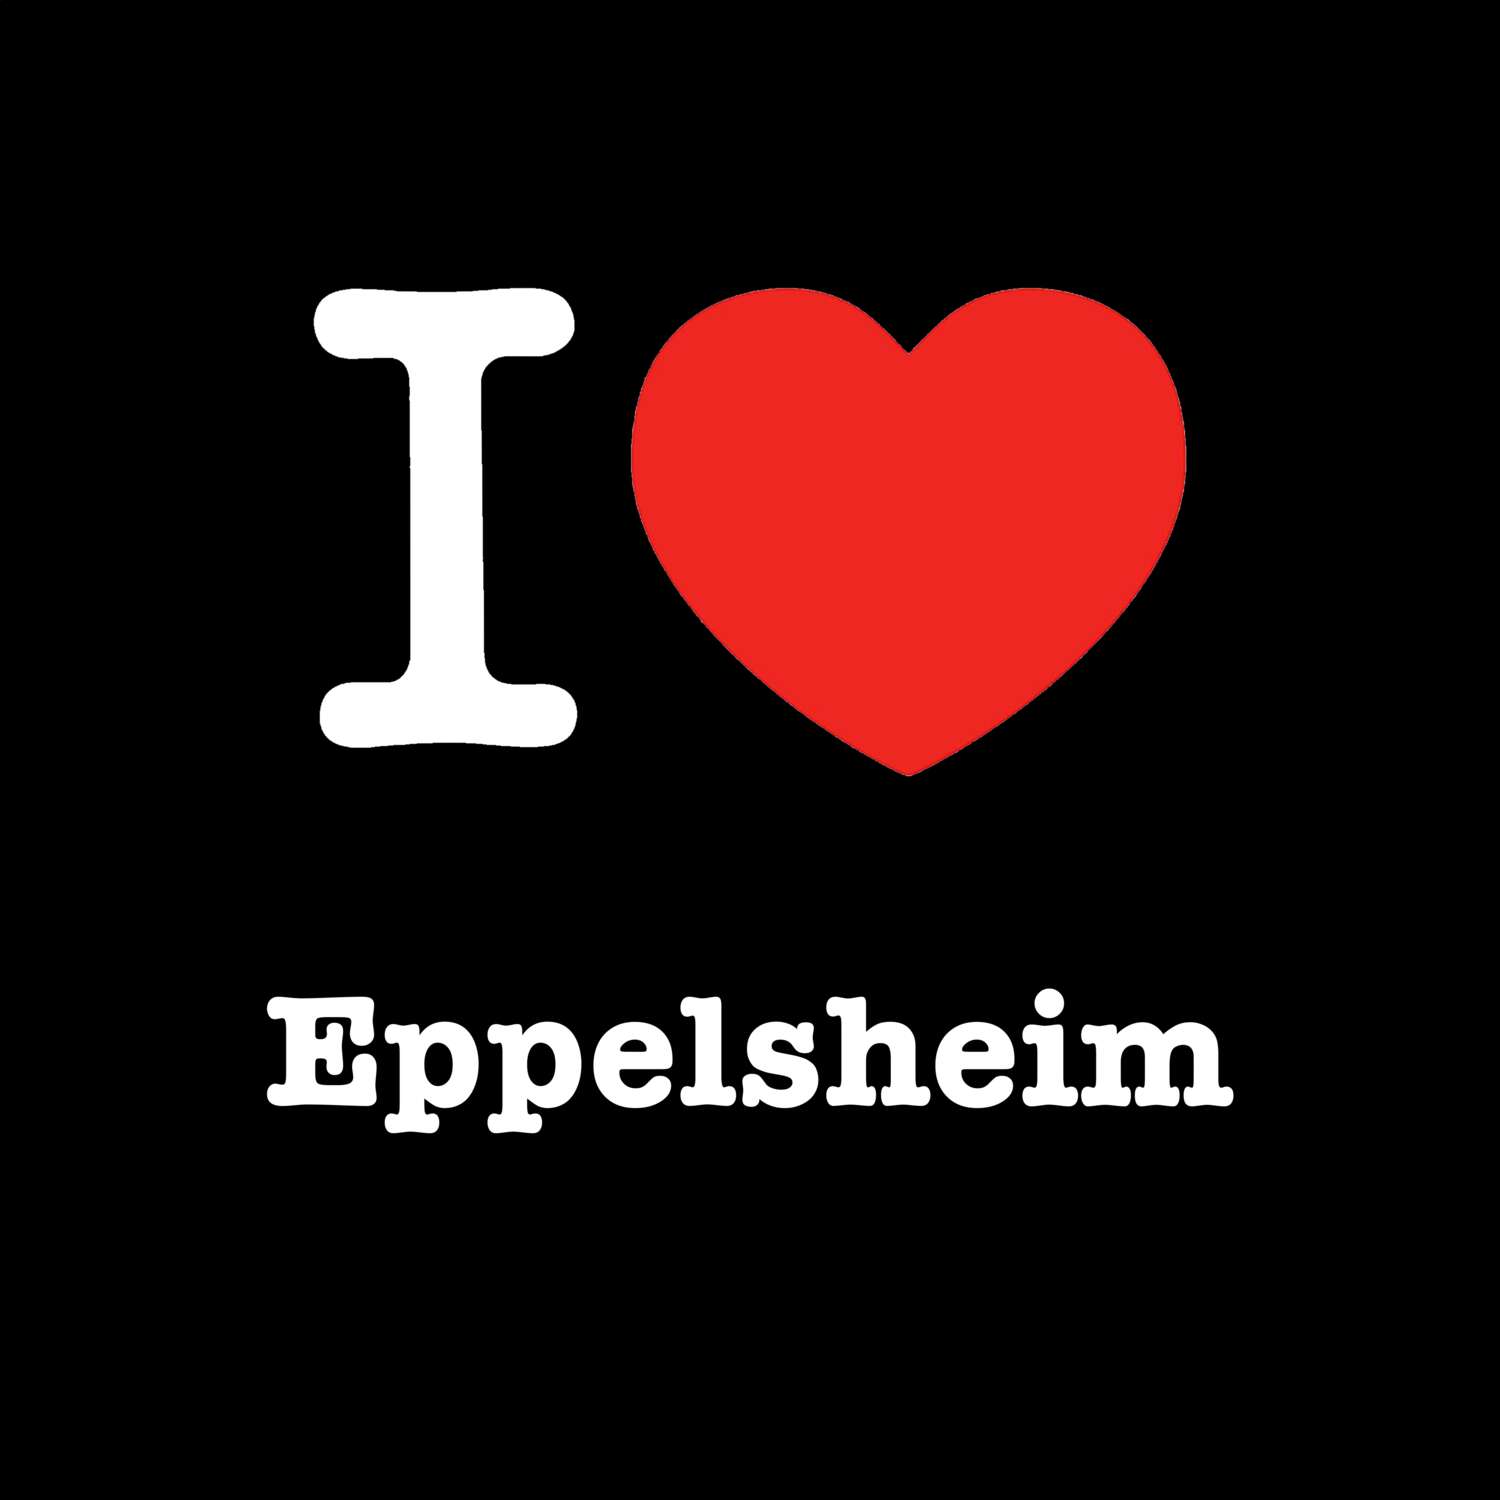 Eppelsheim T-Shirt »I love«